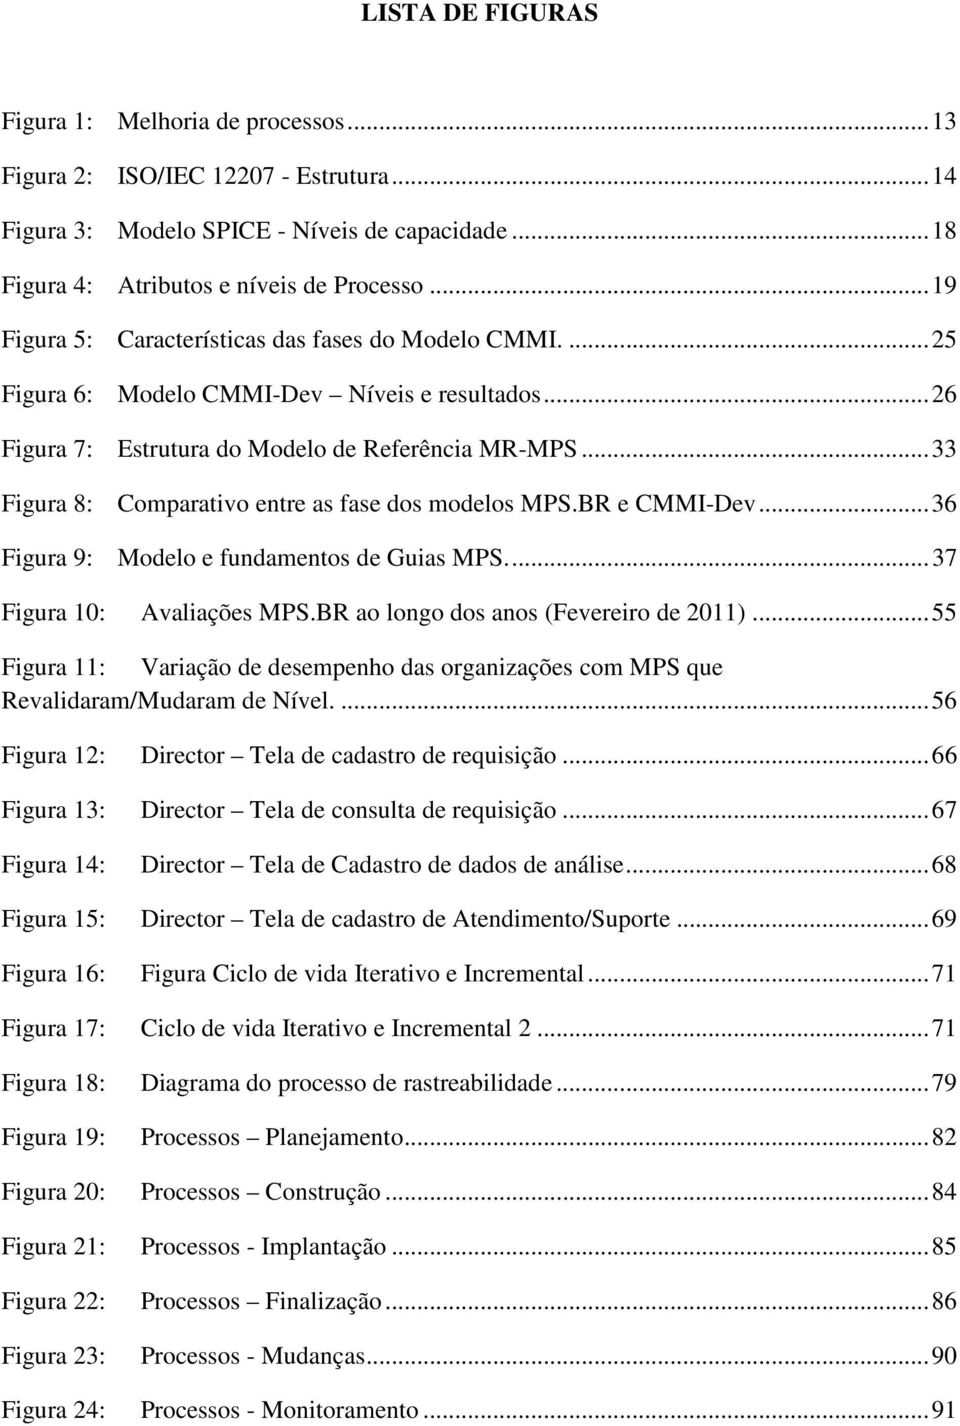 .. 33 Figura 8: Comparativo entre as fase dos modelos MPS.BR e CMMI-Dev... 36 Figura 9: Modelo e fundamentos de Guias MPS.... 37 Figura 10: Avaliações MPS.BR ao longo dos anos (Fevereiro de 2011).